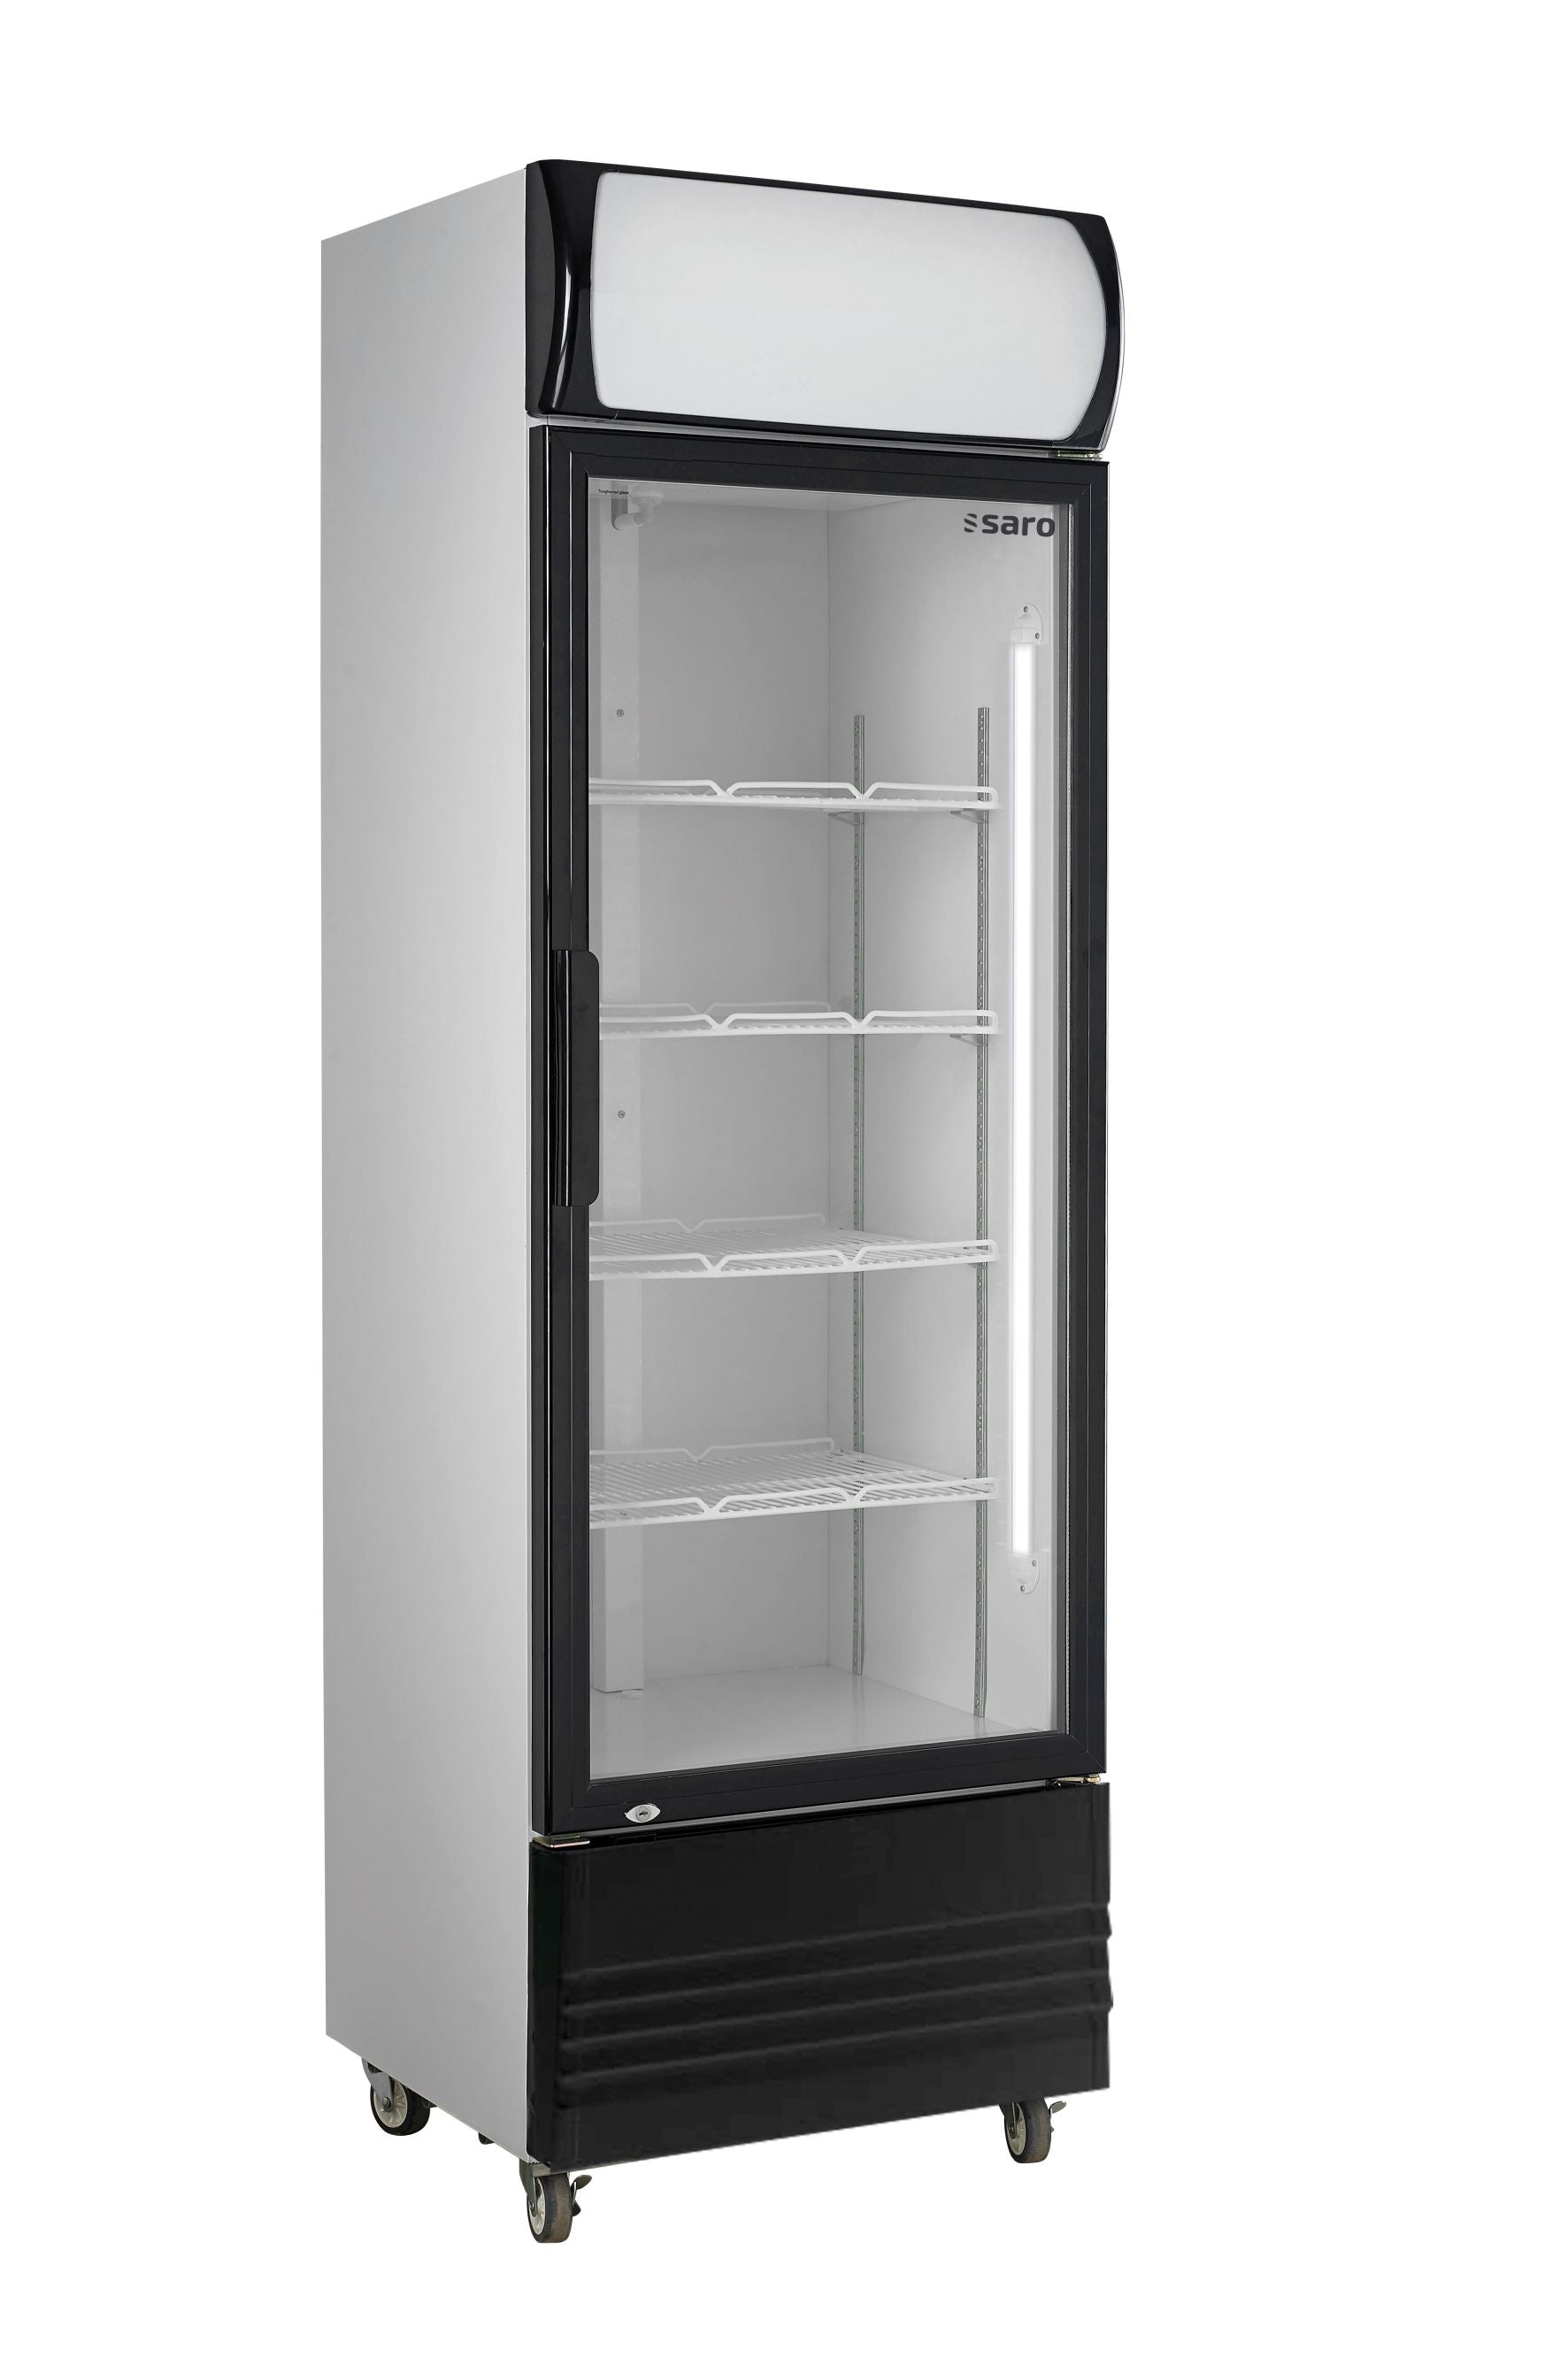 Se SARO Køleskab med glaslåge og billboard, model GTK hos Maxigastro.com